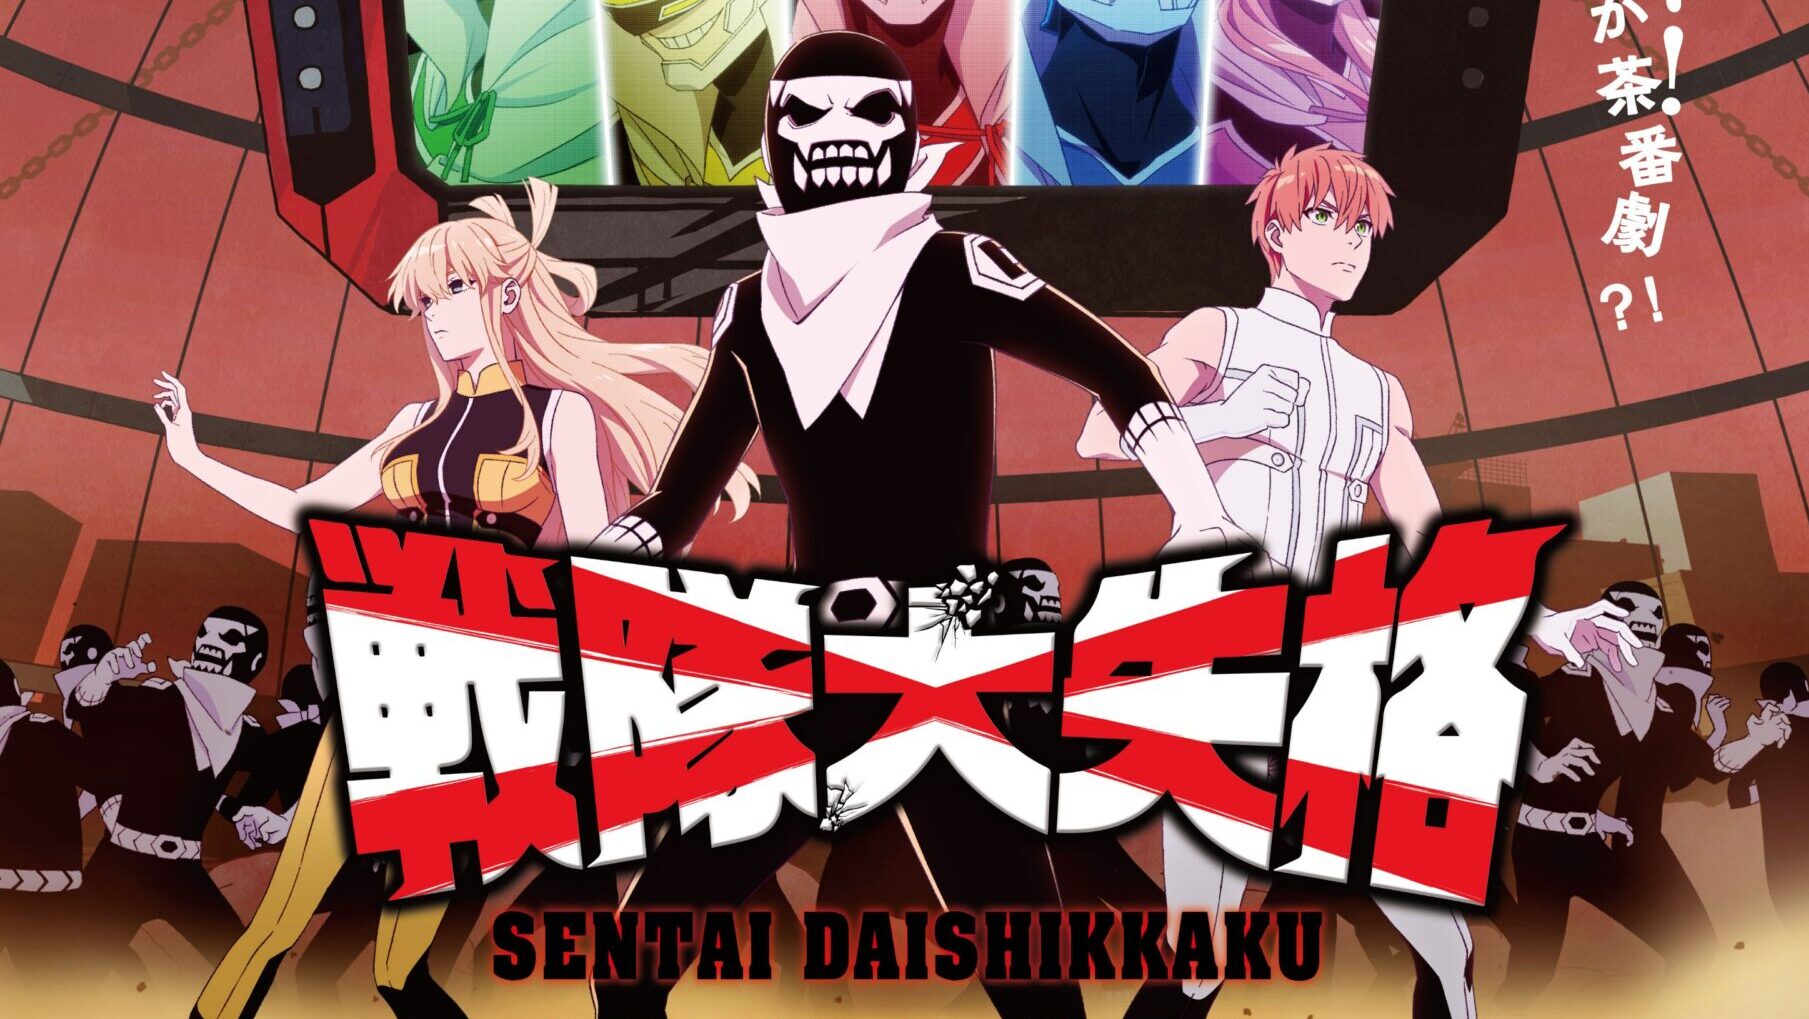 Sentai Daishikkaku